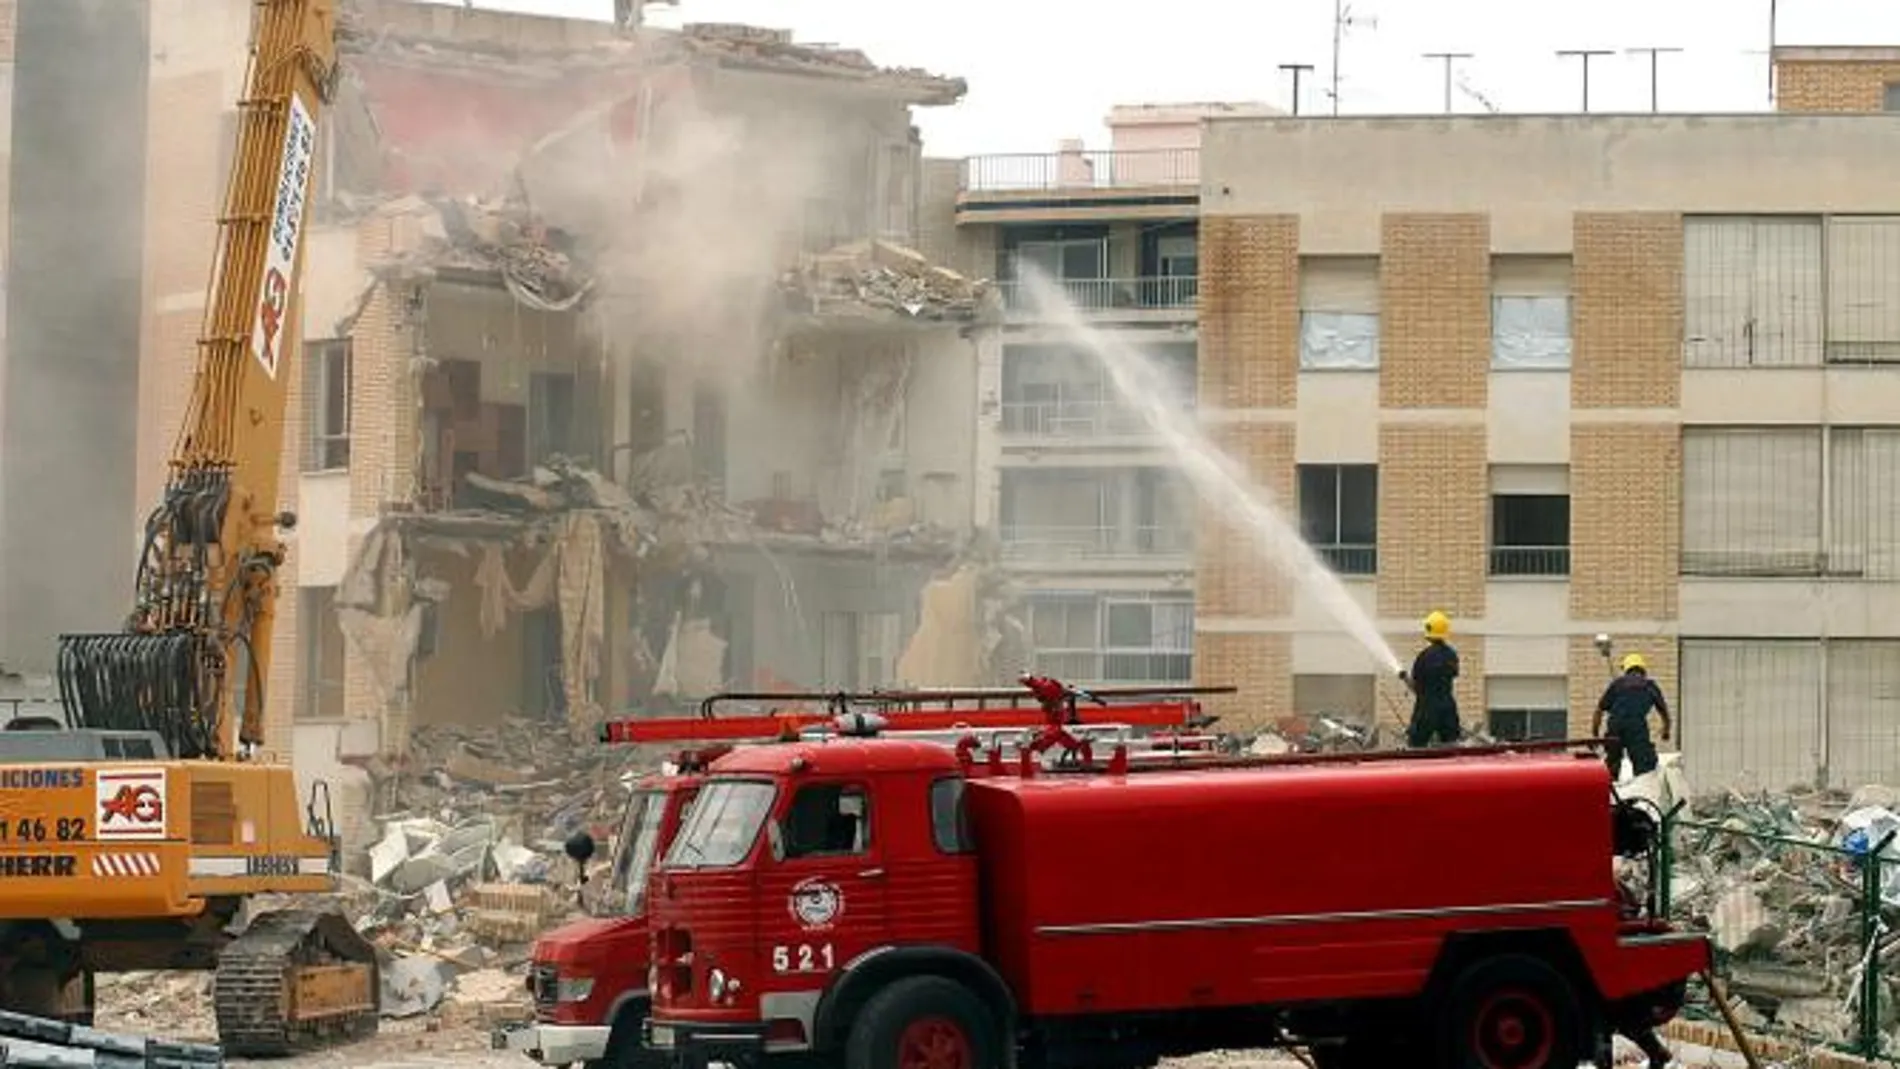 El atentado en Santa Pola provocó la muerte de dos personas y cuantiosos daños materiales